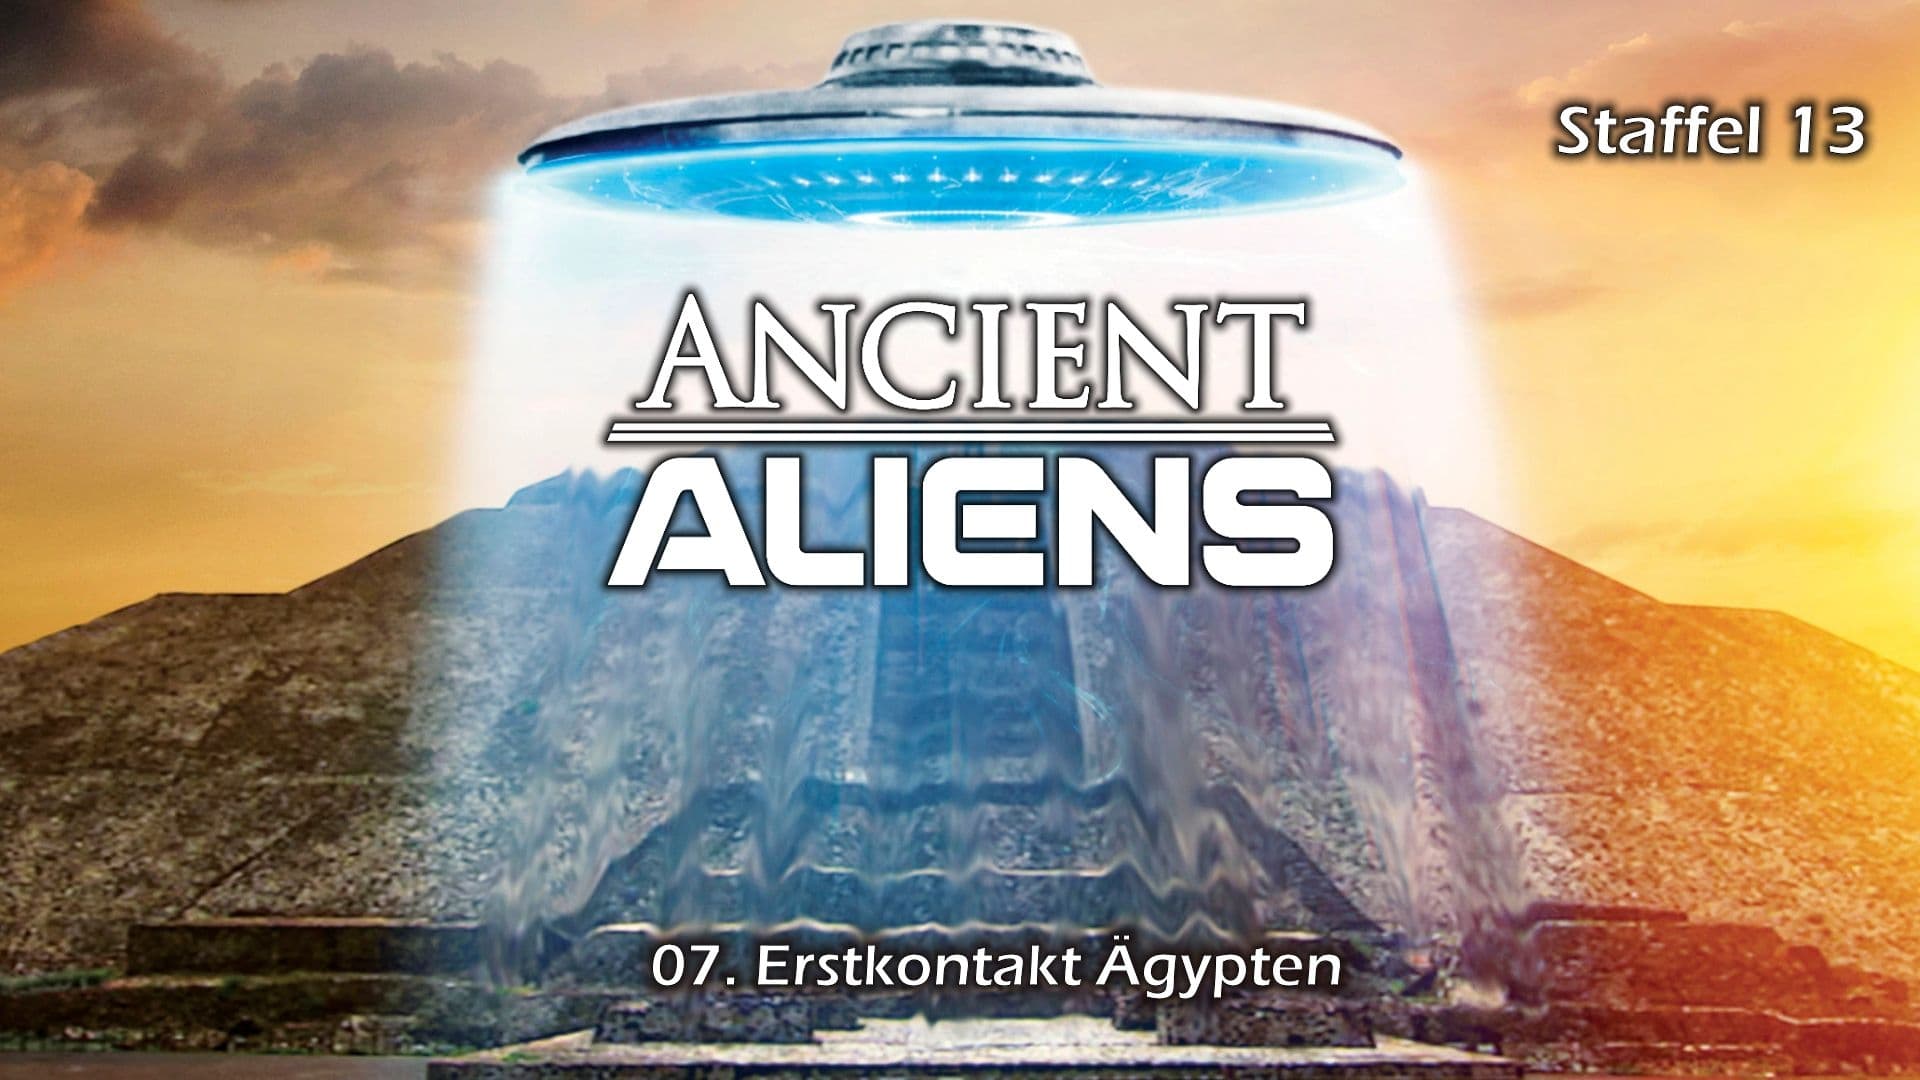 Ancient Aliens - Unerklärliche Phänomene - Staffel 15